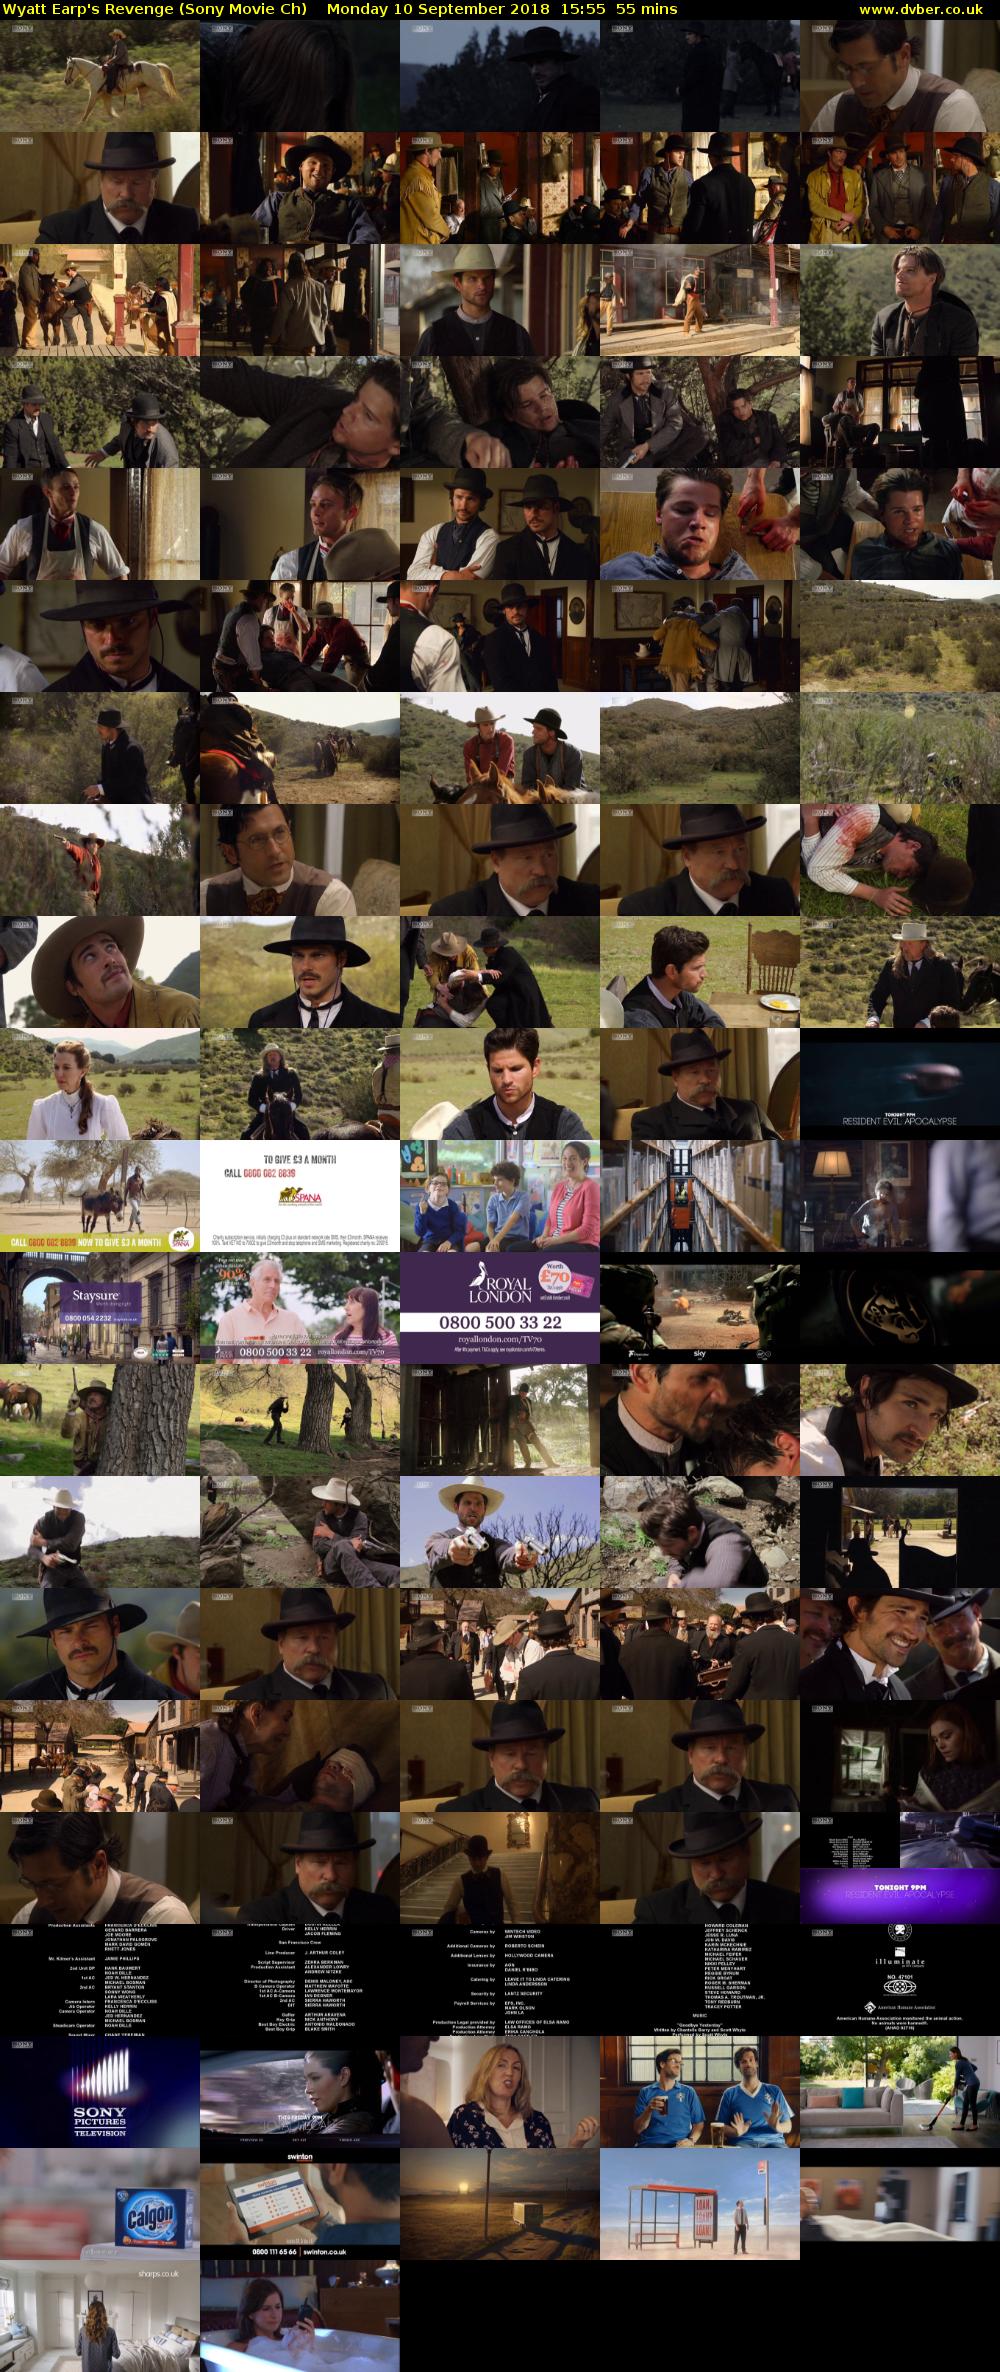 Wyatt Earp's Revenge (Sony Movie Ch) Monday 10 September 2018 15:55 - 16:50